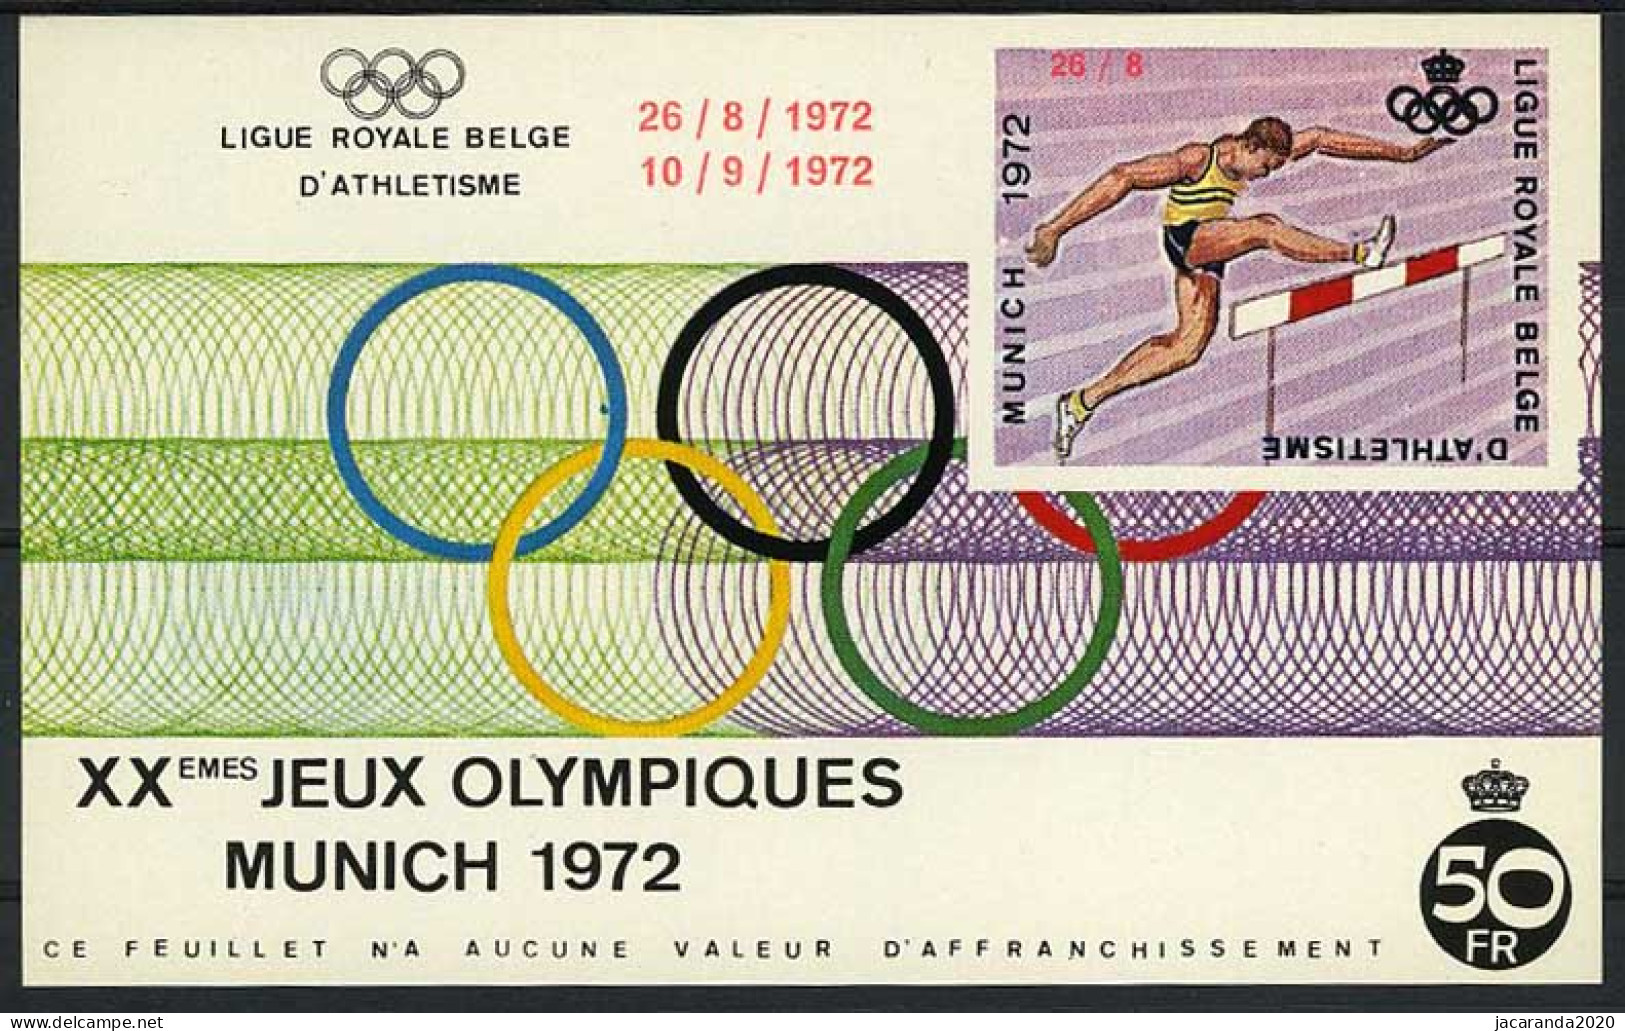 België E122 - Olympische Spelen - München 1972 - Hordenlopen - Met Opdruk - Avec Surcharge - Erinnophilie - Reklamemarken [E]